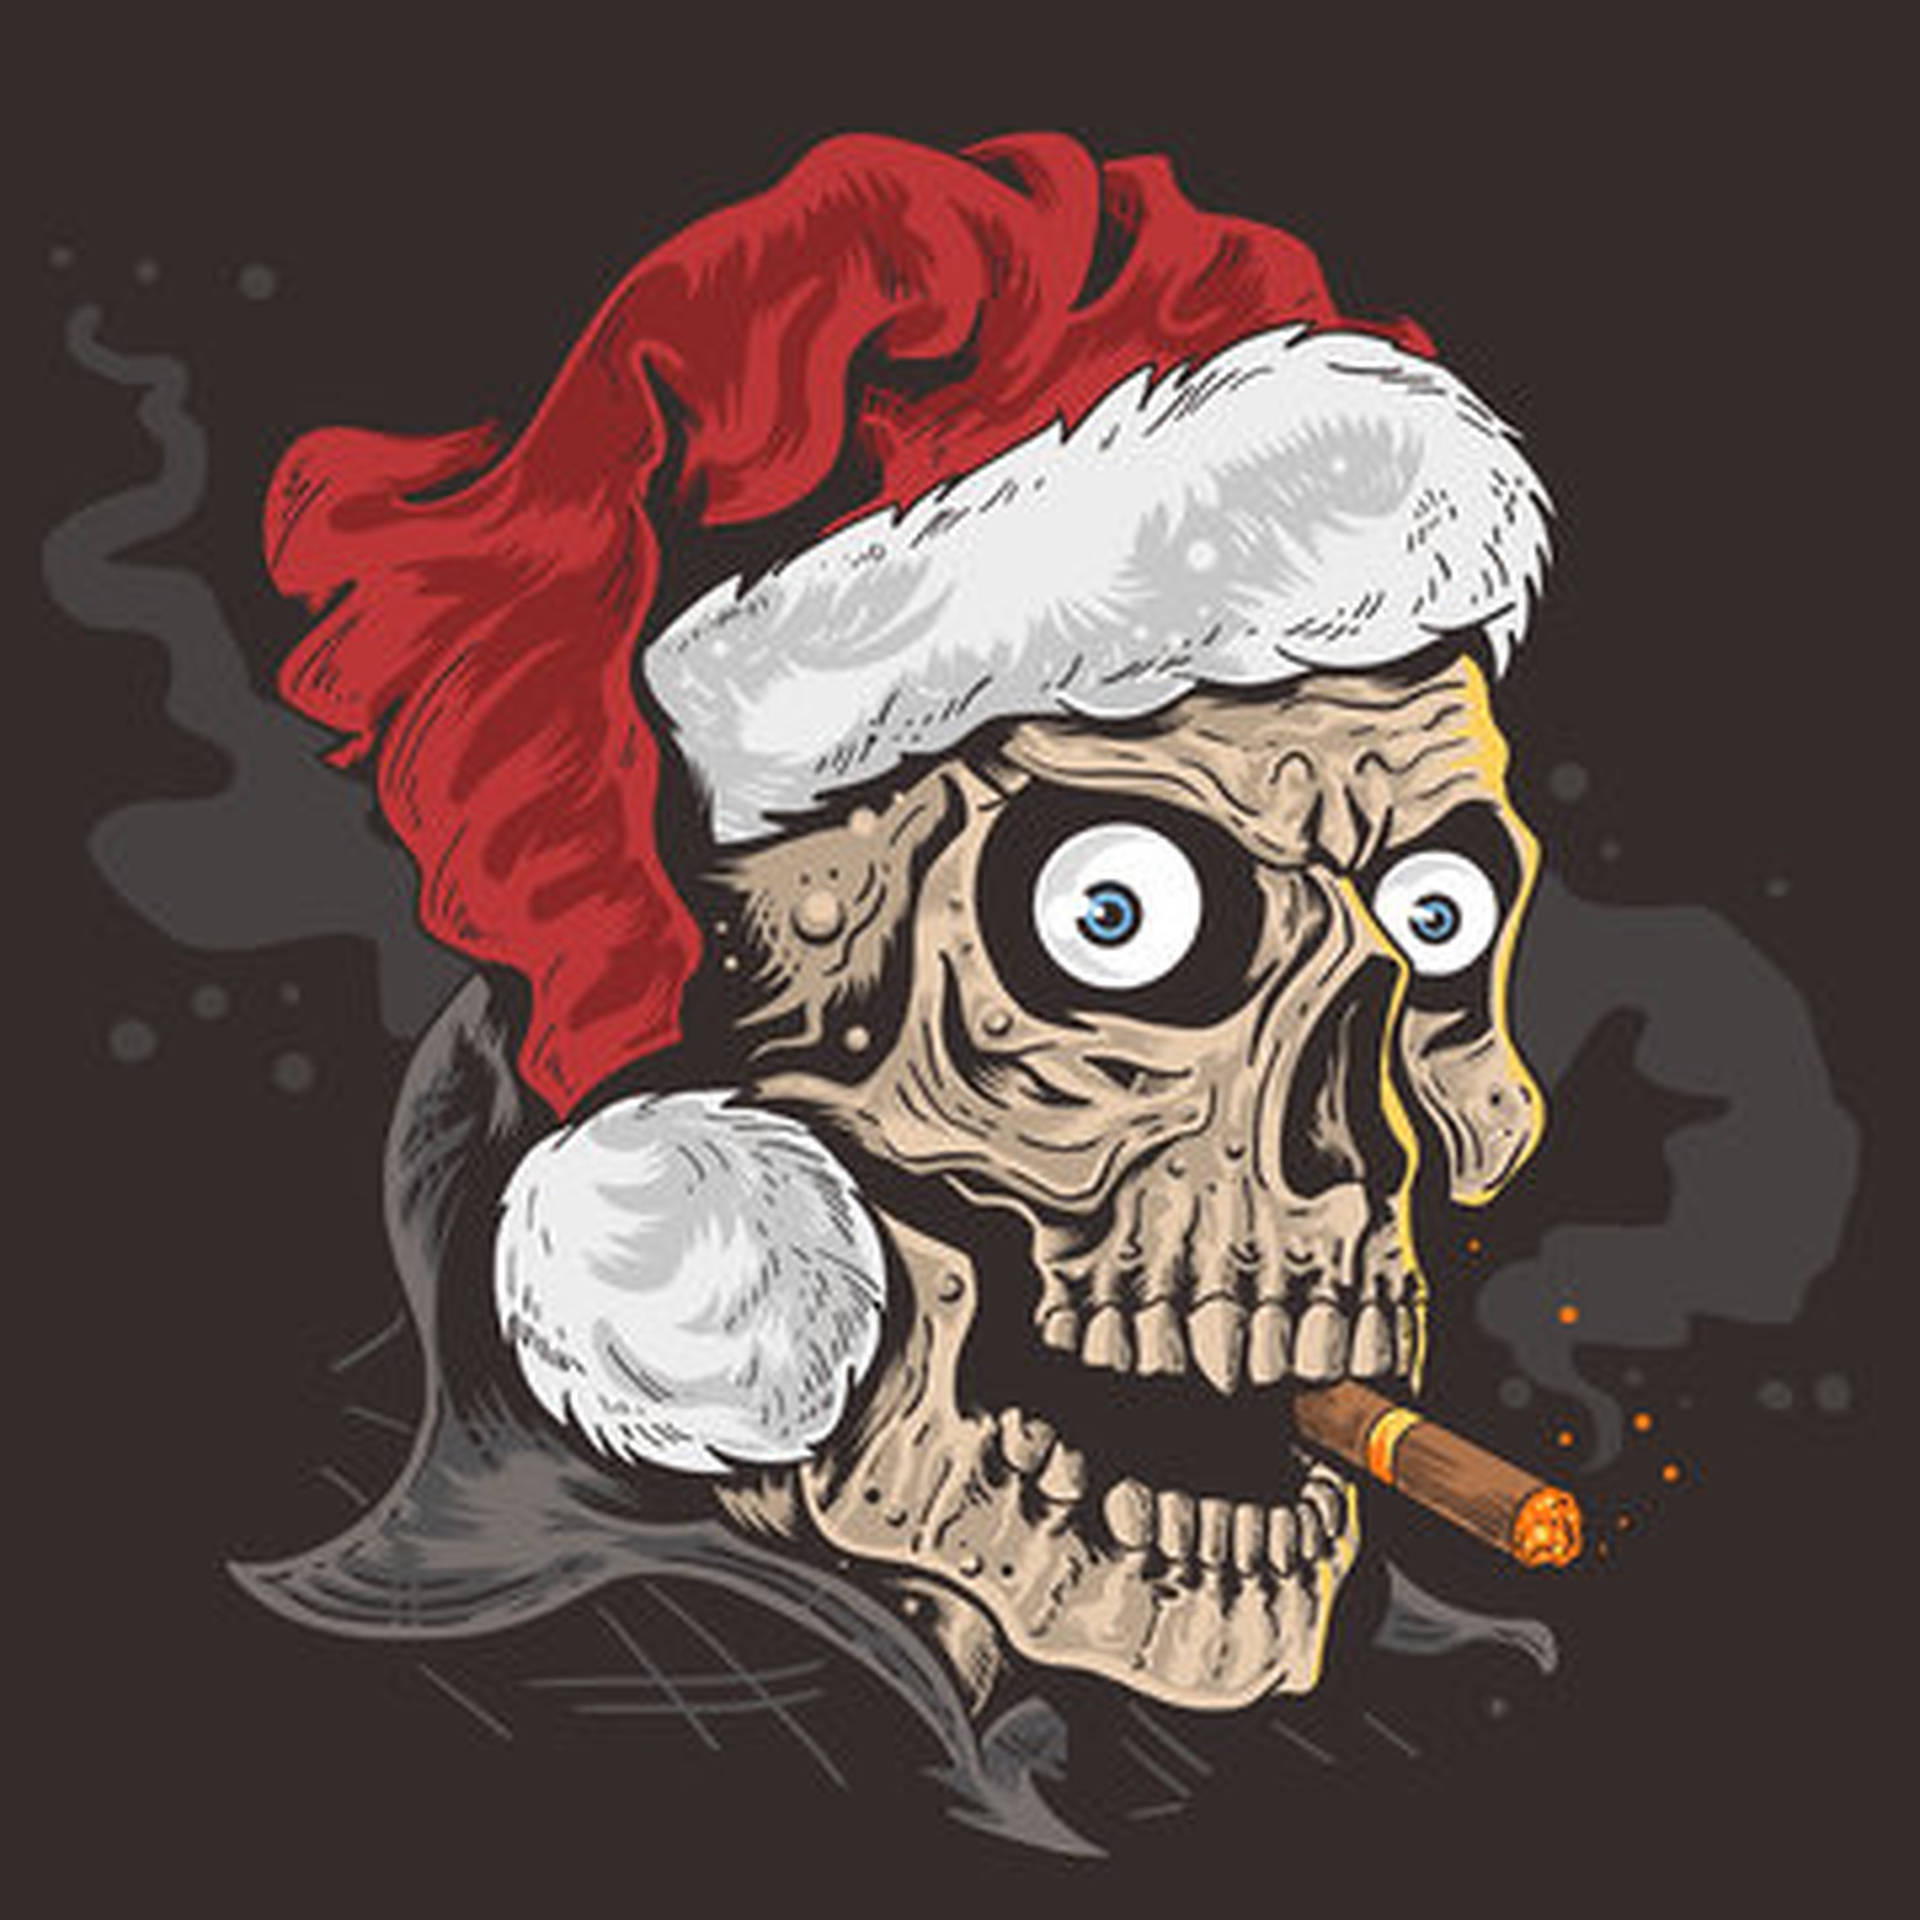 Evil Skull With Santa’s Hat